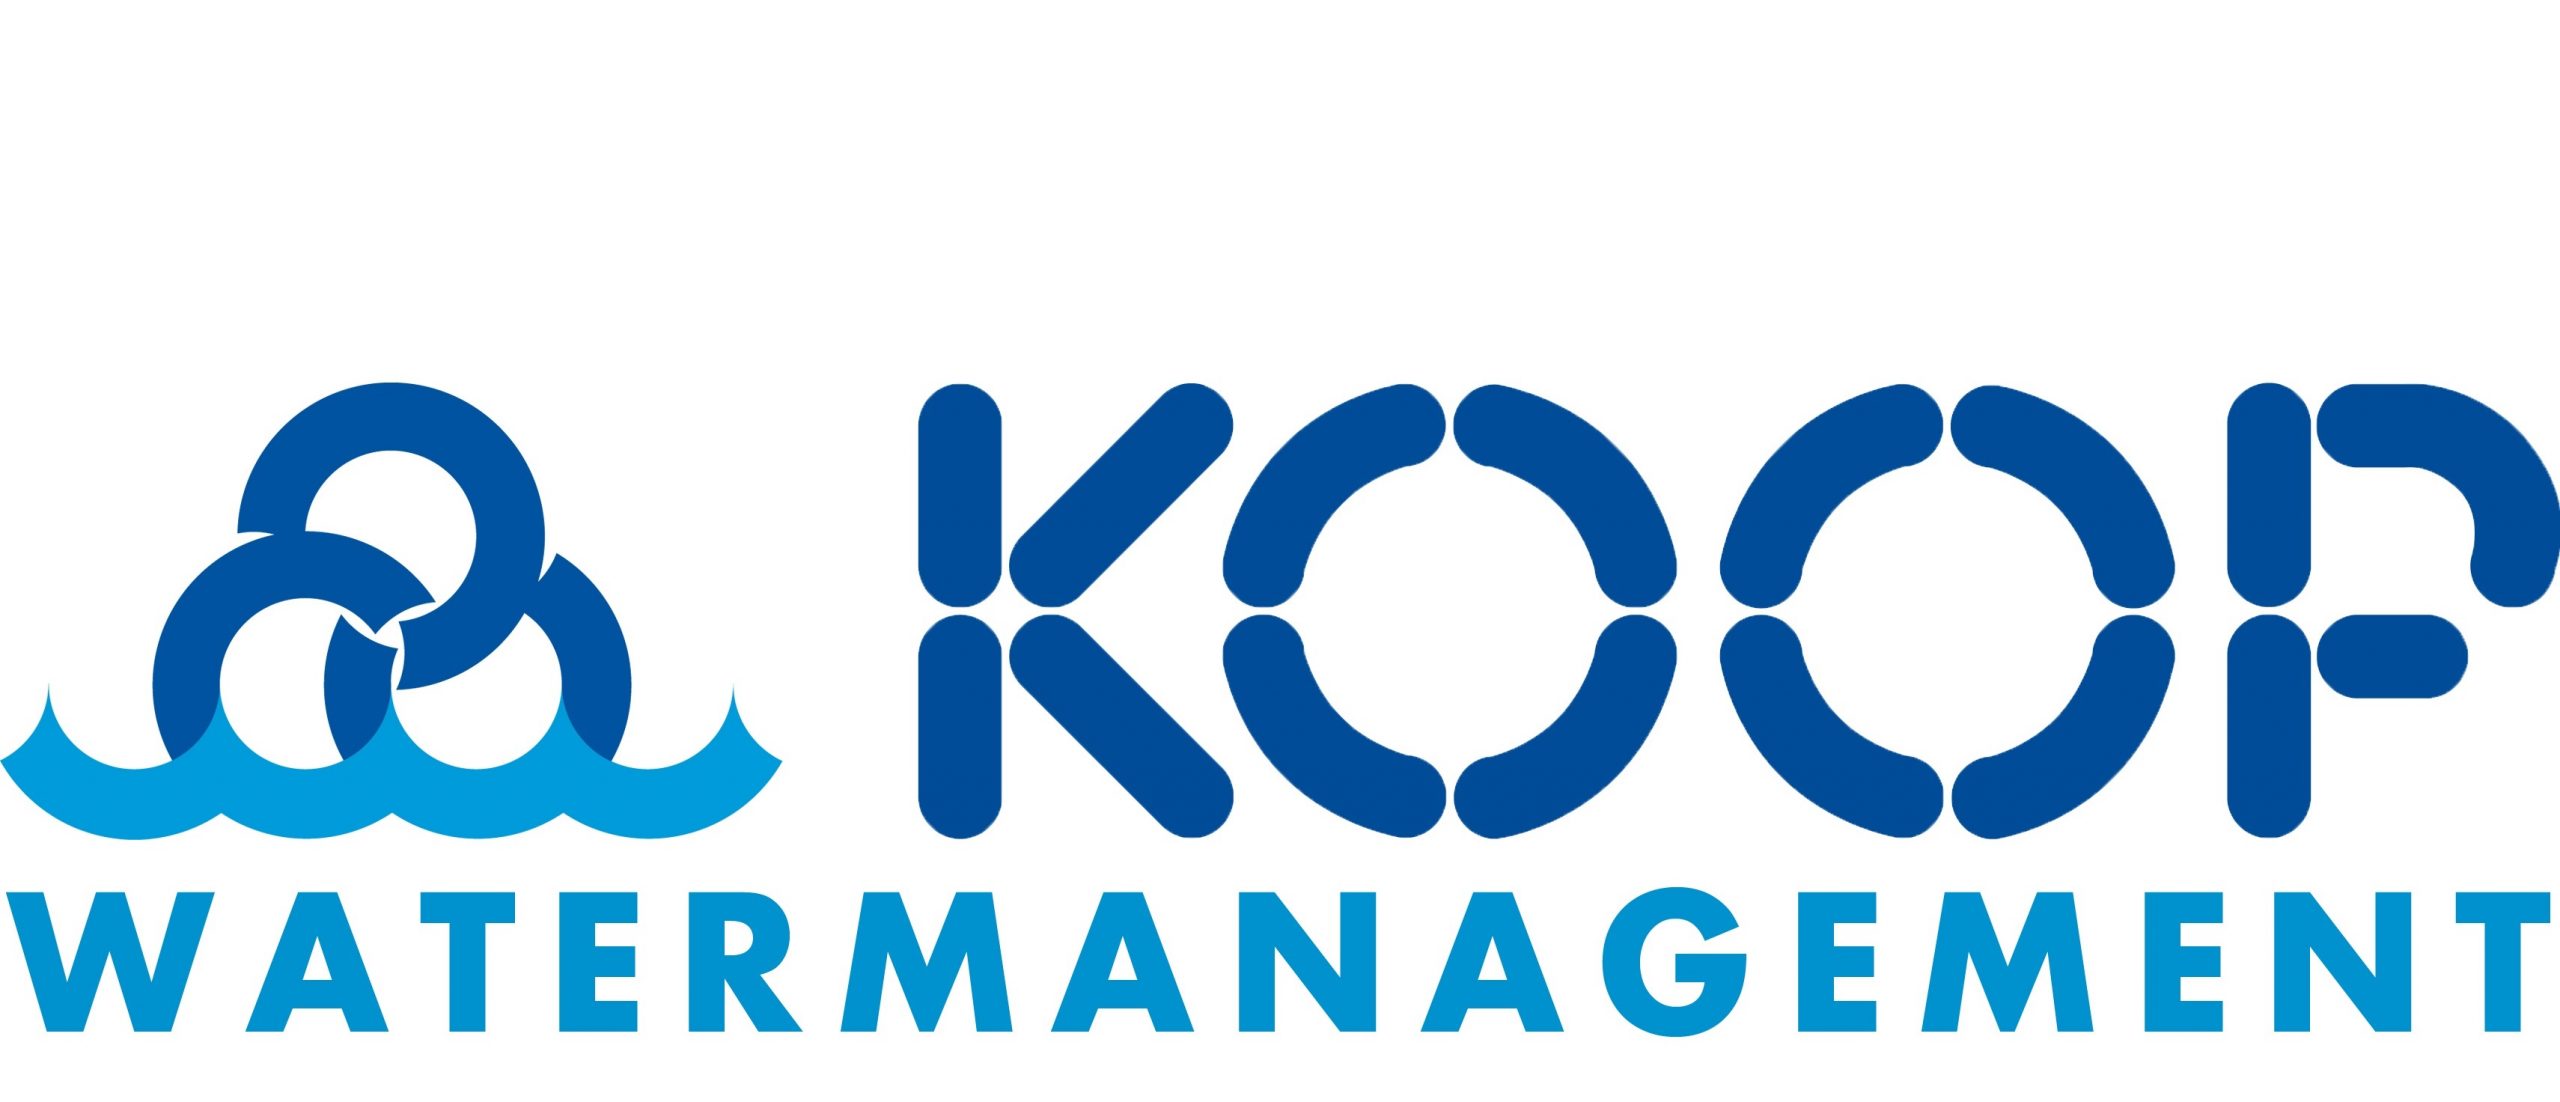 koop-watermanagement-test-2